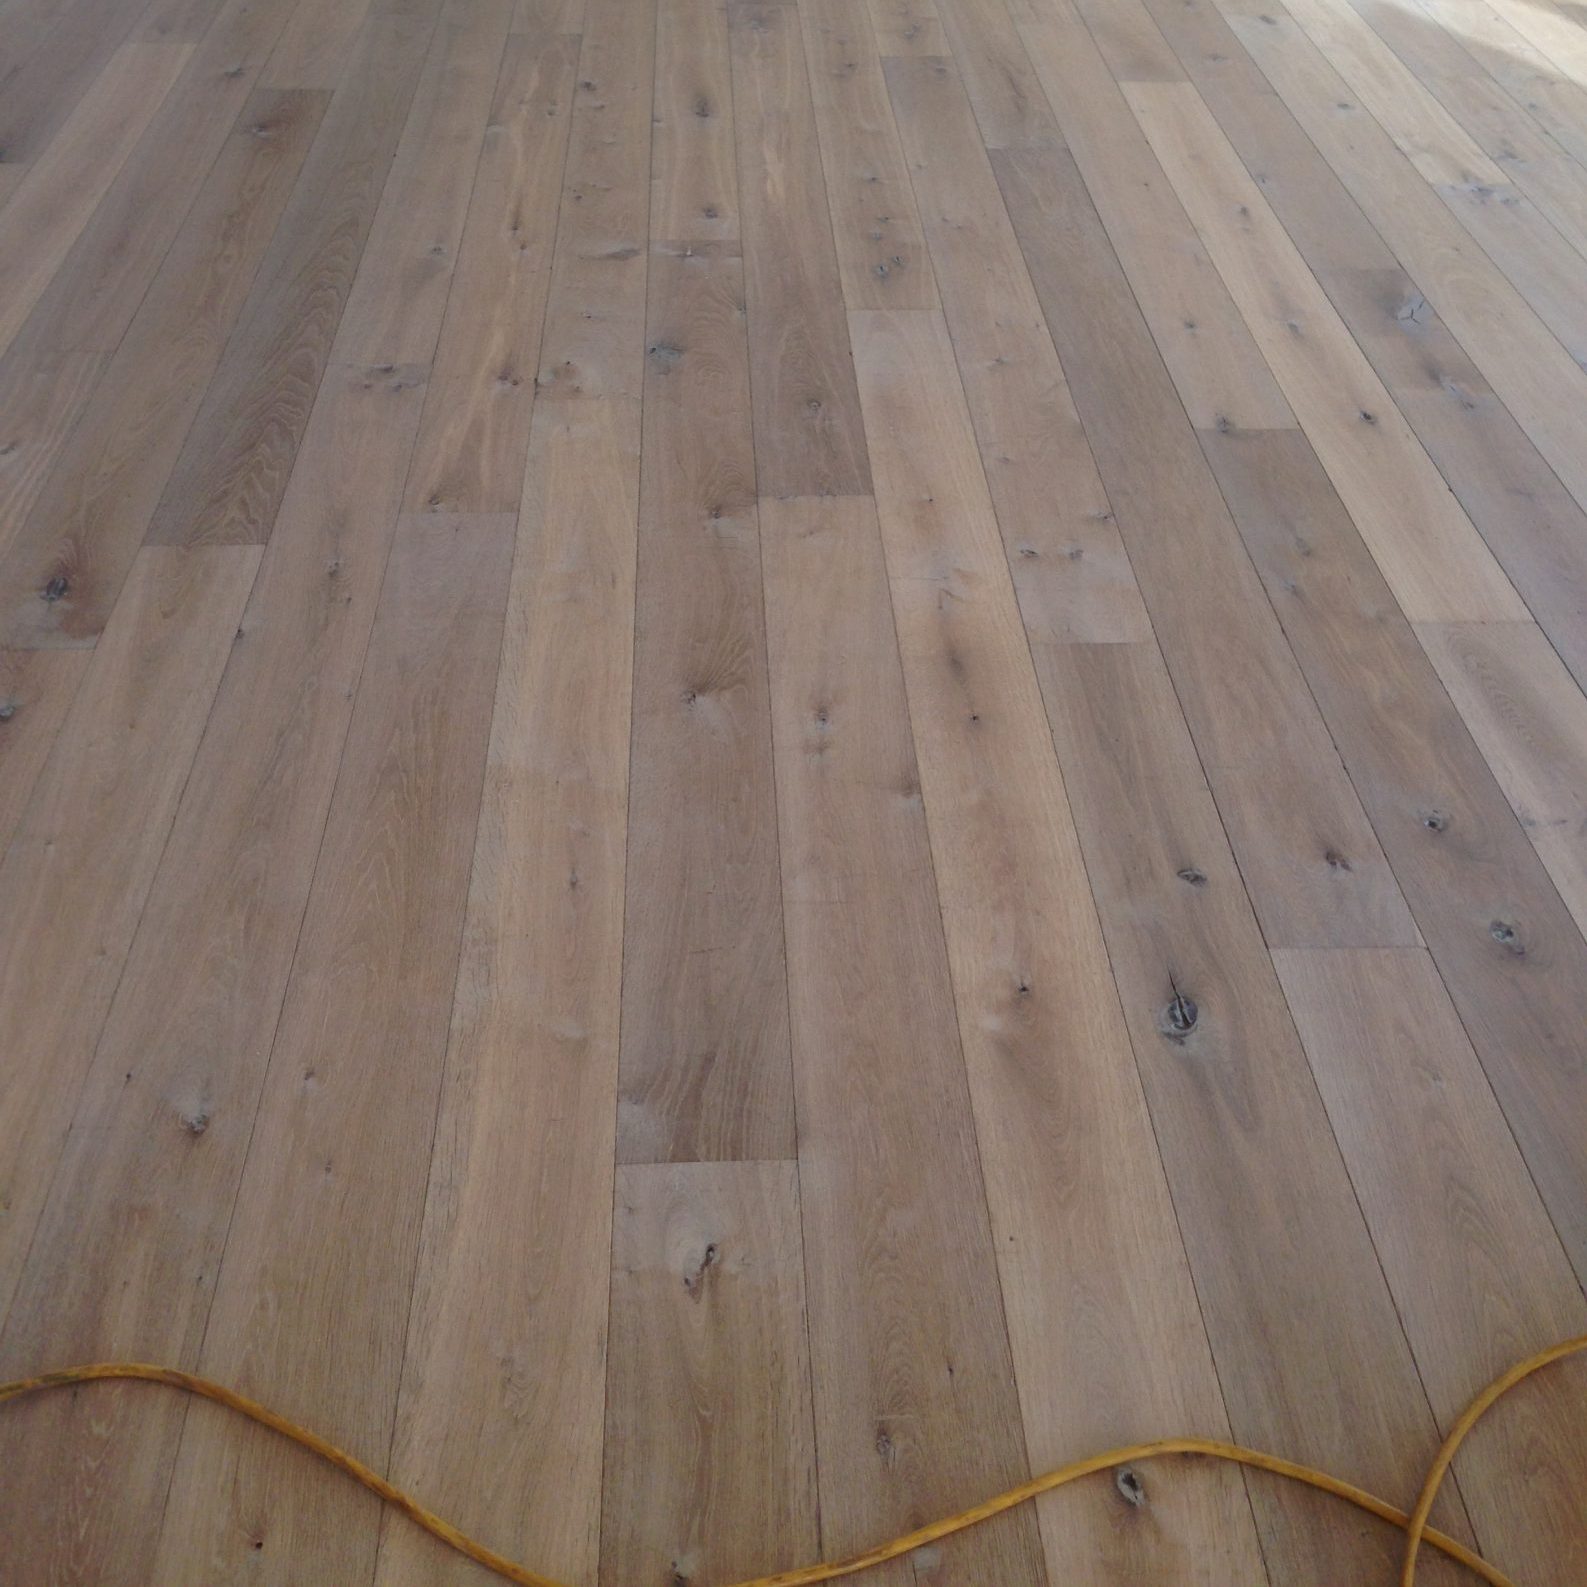 ab wood expert heerlen kerkrade brunssum parkstad vloerenspecialist-houten vloeren